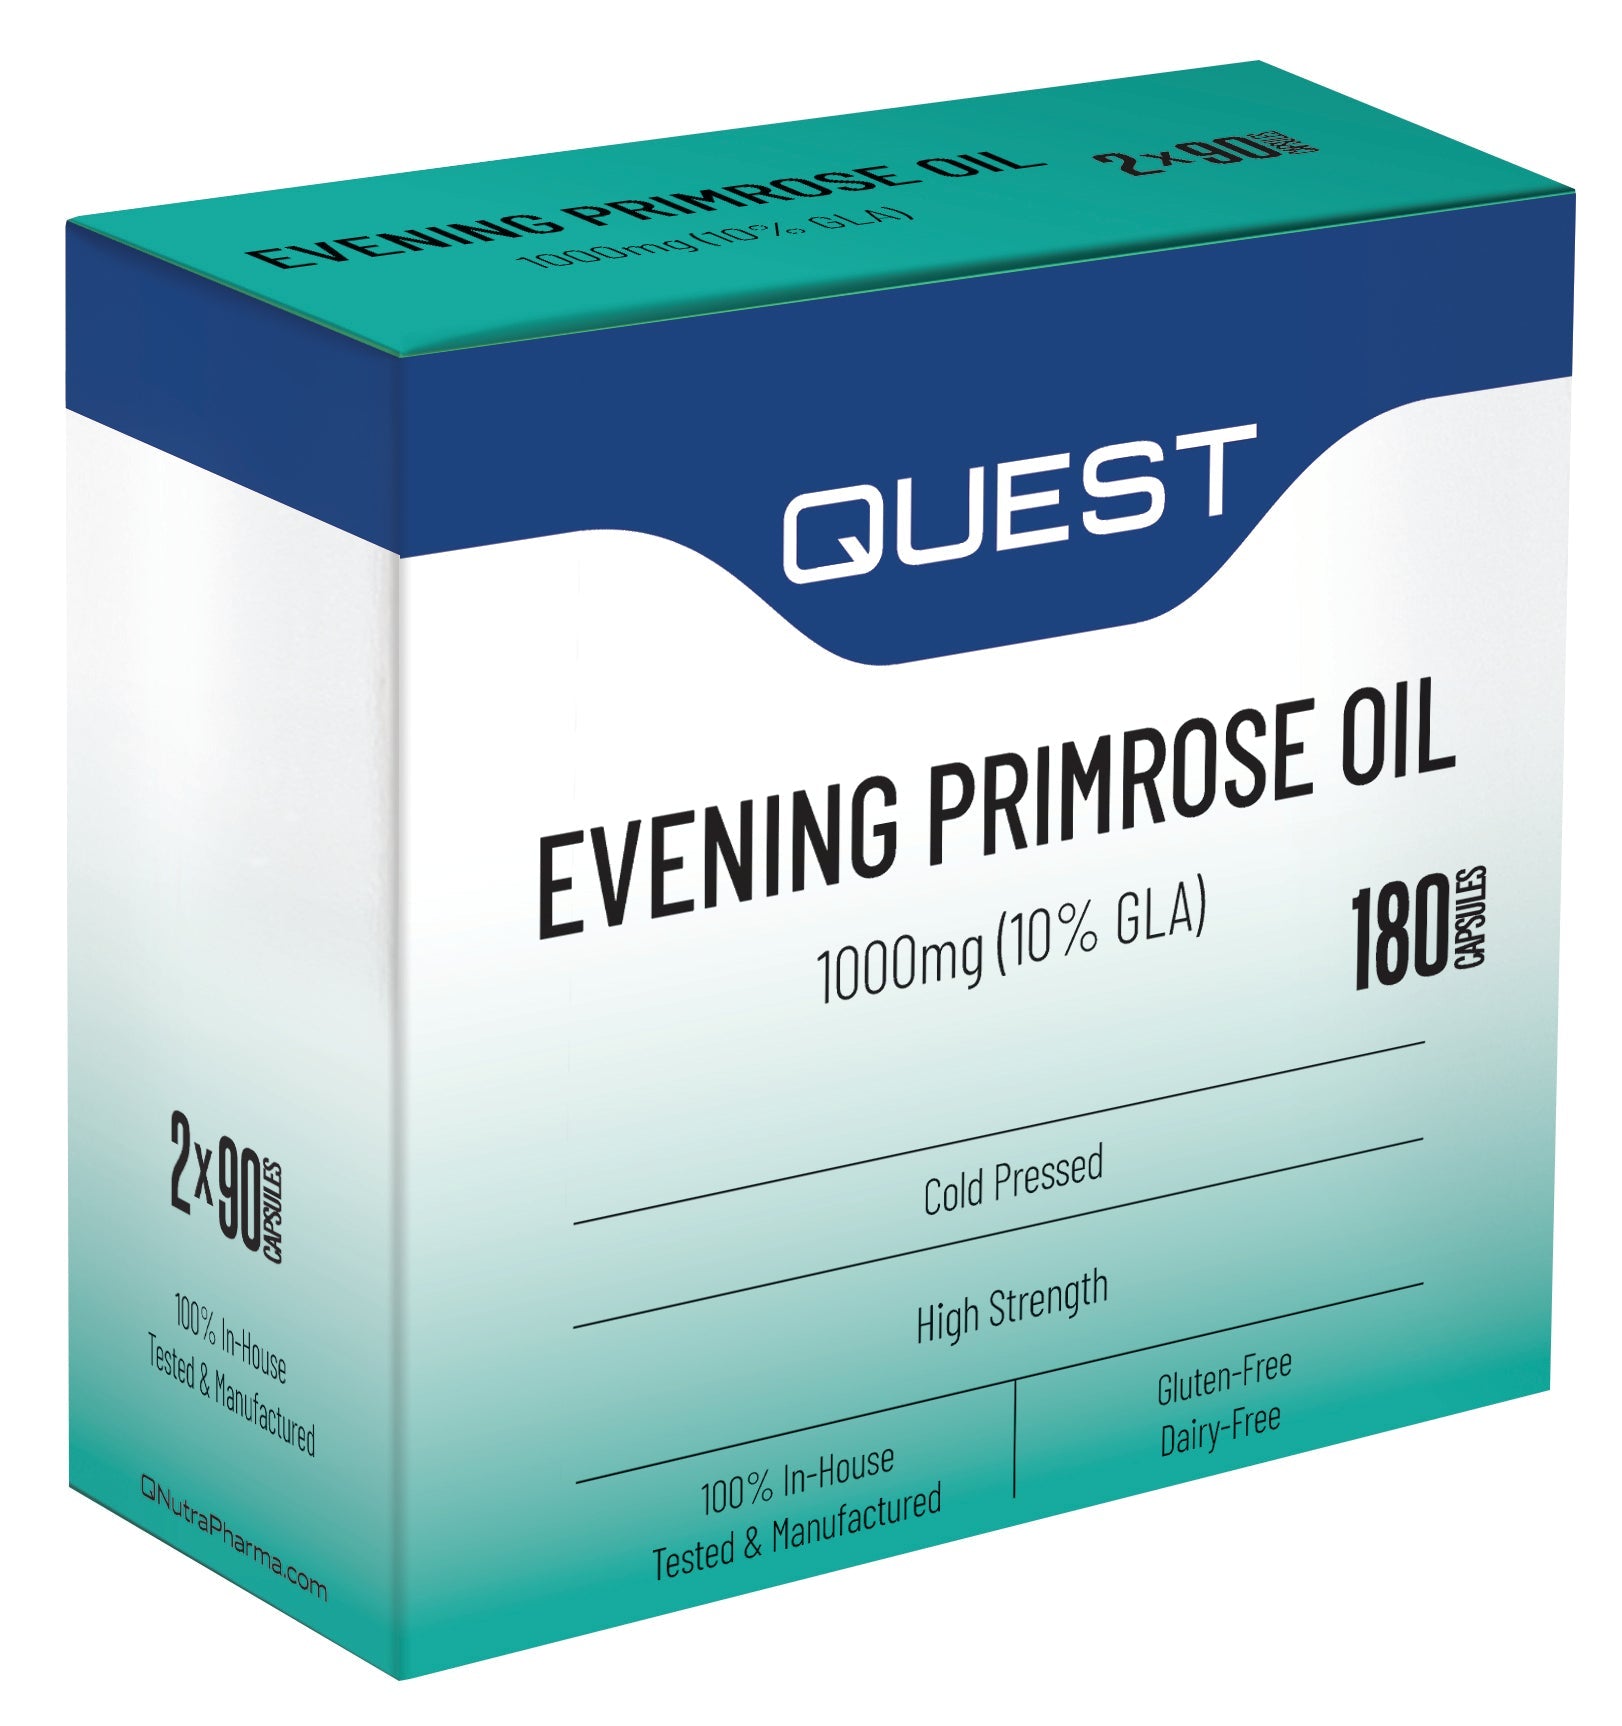 Evening Primrose Oil 1000mg Twin Box 46409B Default Title / 1x(2x90)Ca